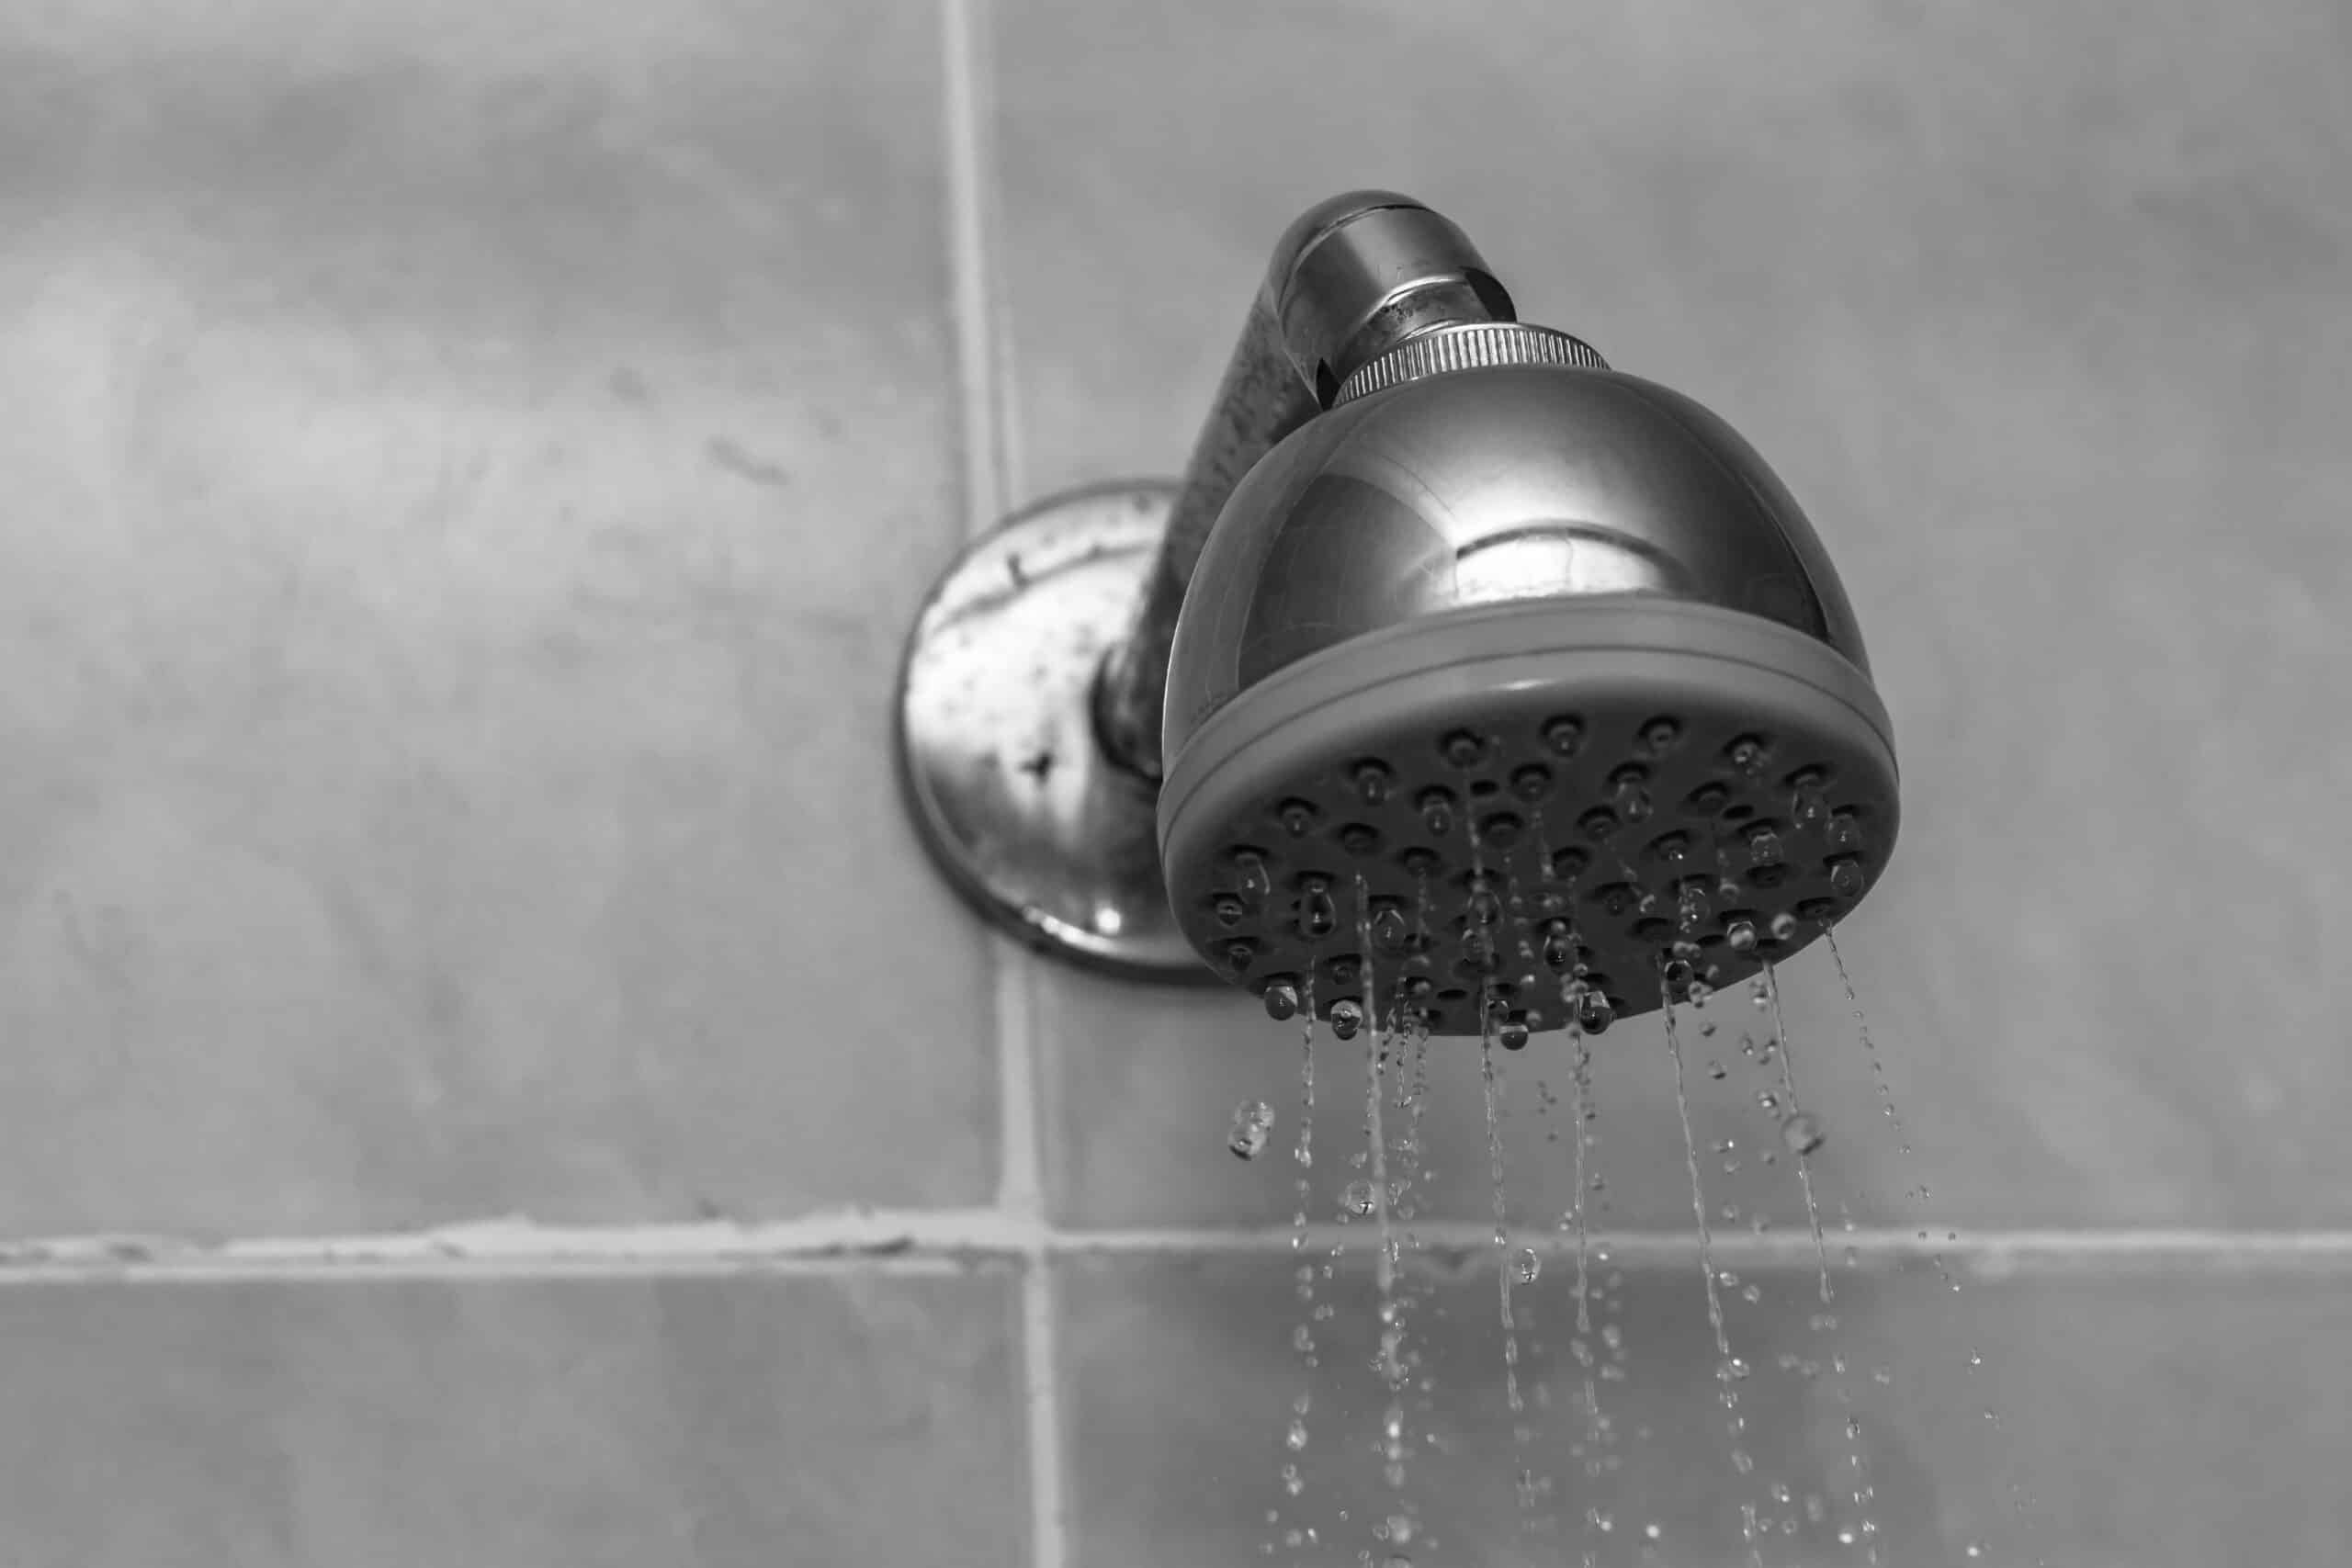 Plus de pression de l'eau dans ma douche : Comment réagir ?